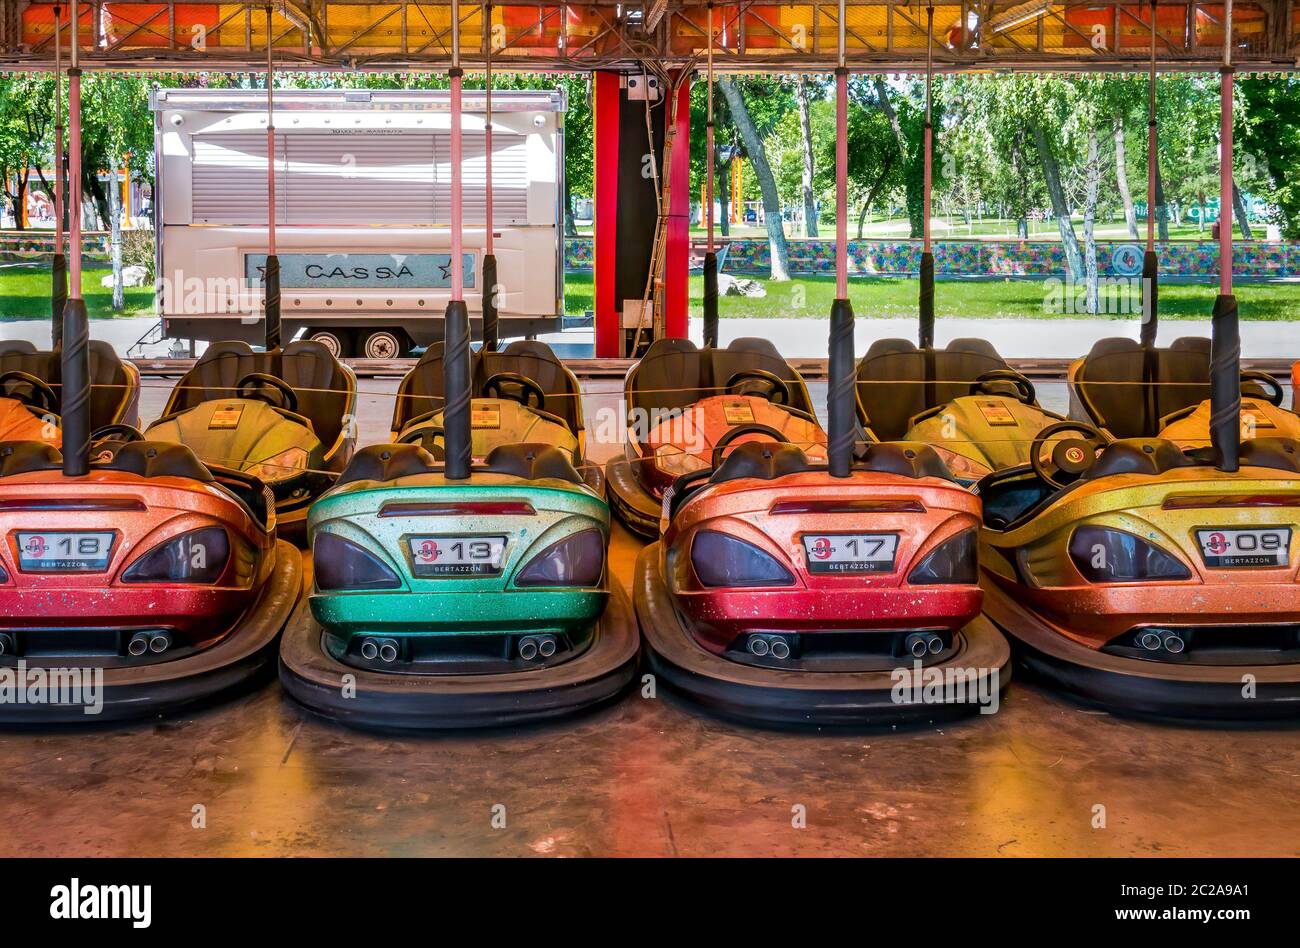 Bukarest / Rumänien - 06.03.2020: Farbige elektrische Stoßfänger Autos oder dodgem Autos im Kinder-World-Park geparkt.. Stockfoto